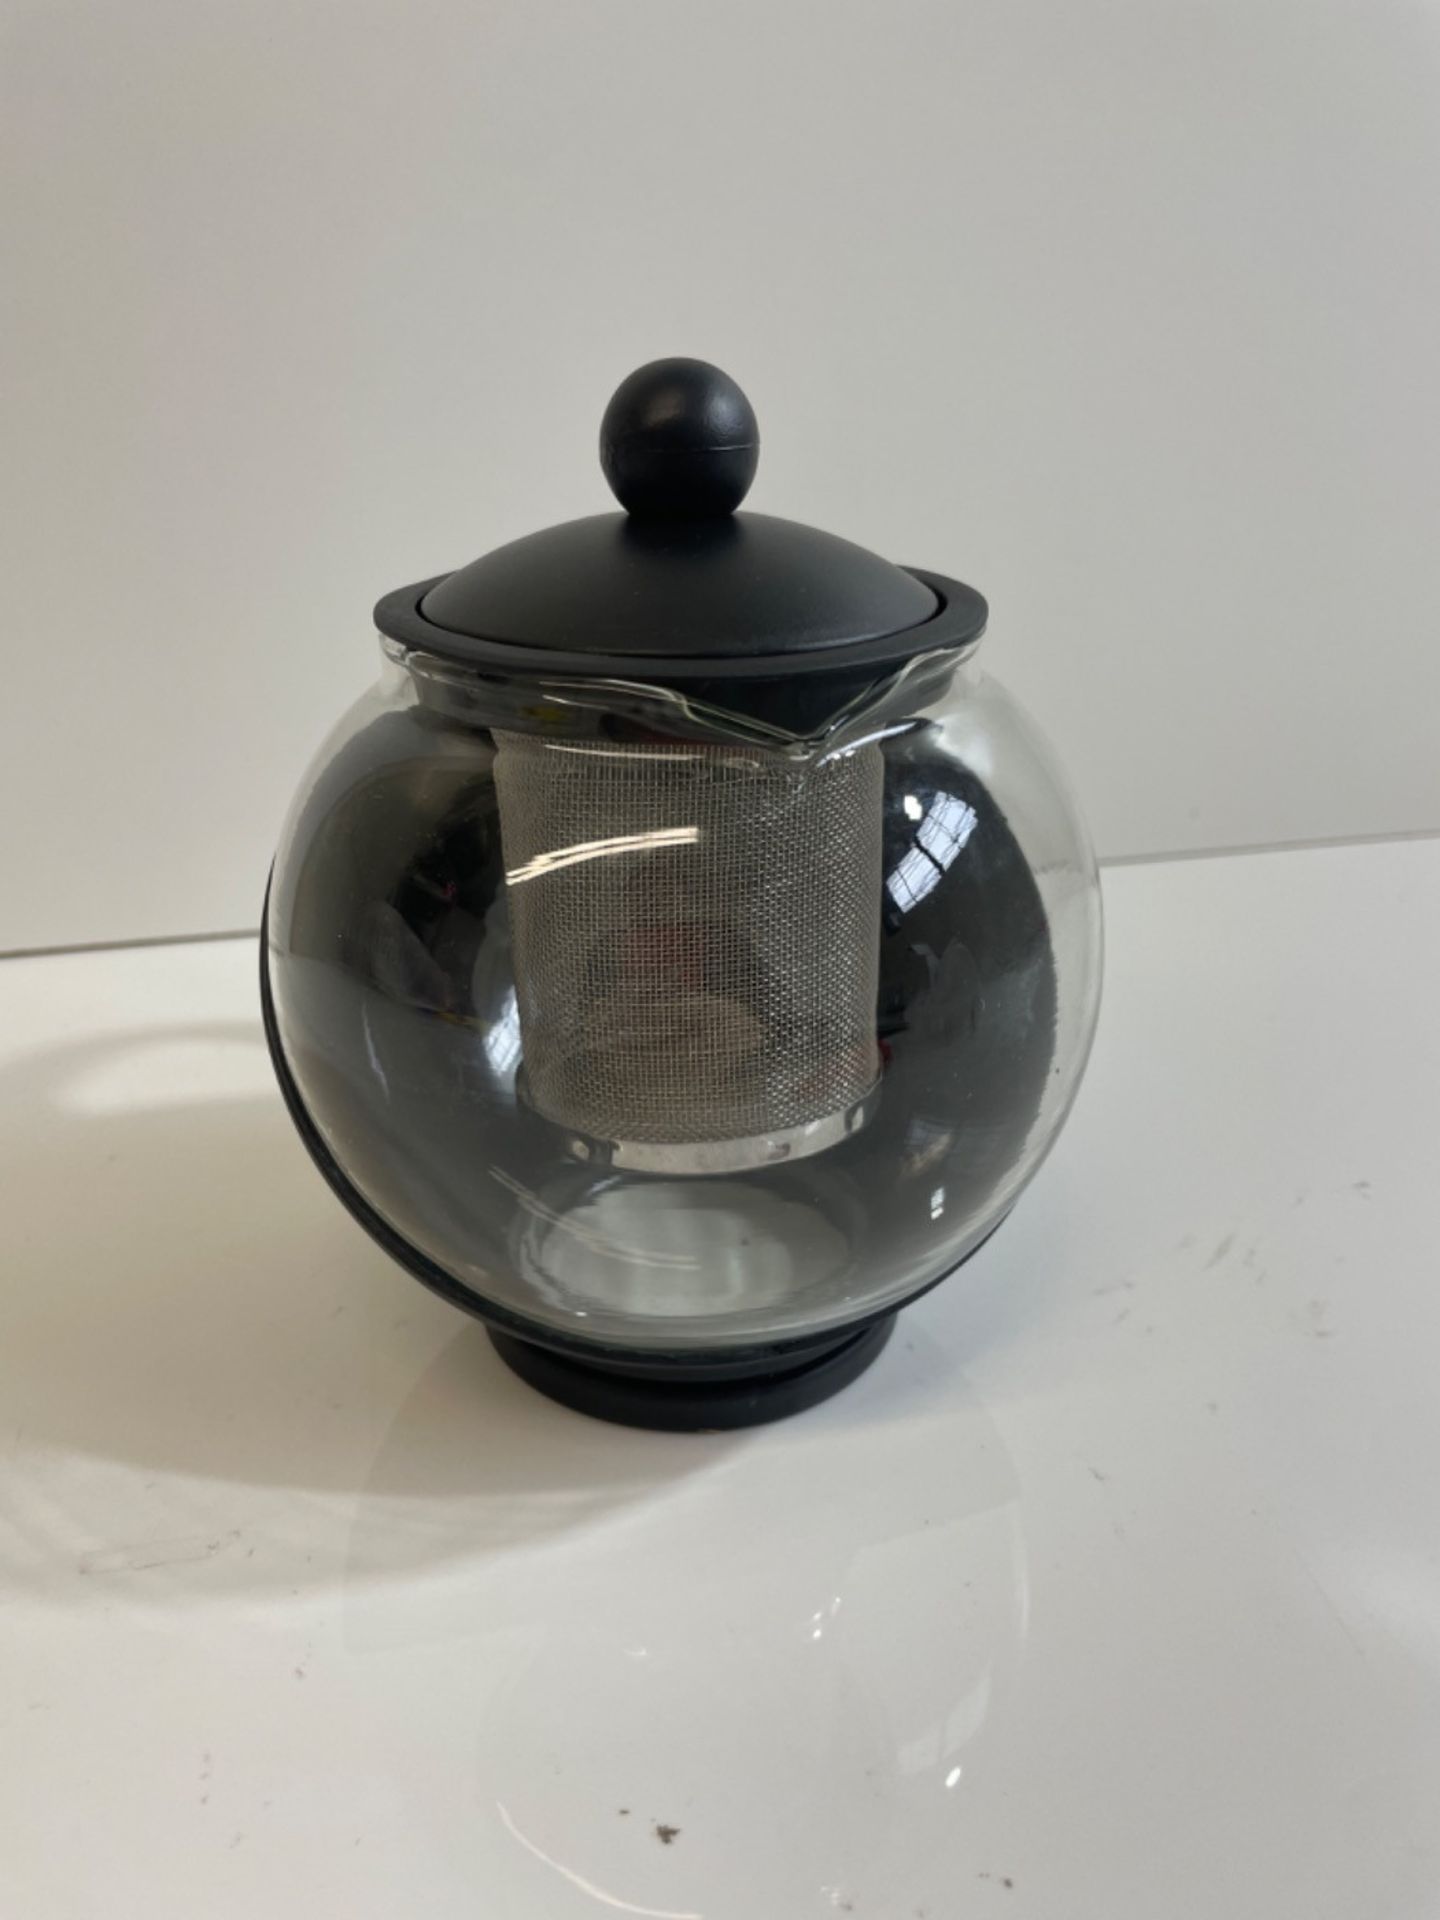 Caf? Ole CMP-07TP Everyday Round Tea Pot Infuser Basket Glass Teapot Loose Leaf 700 ml/24 oz, Blac - Image 3 of 3